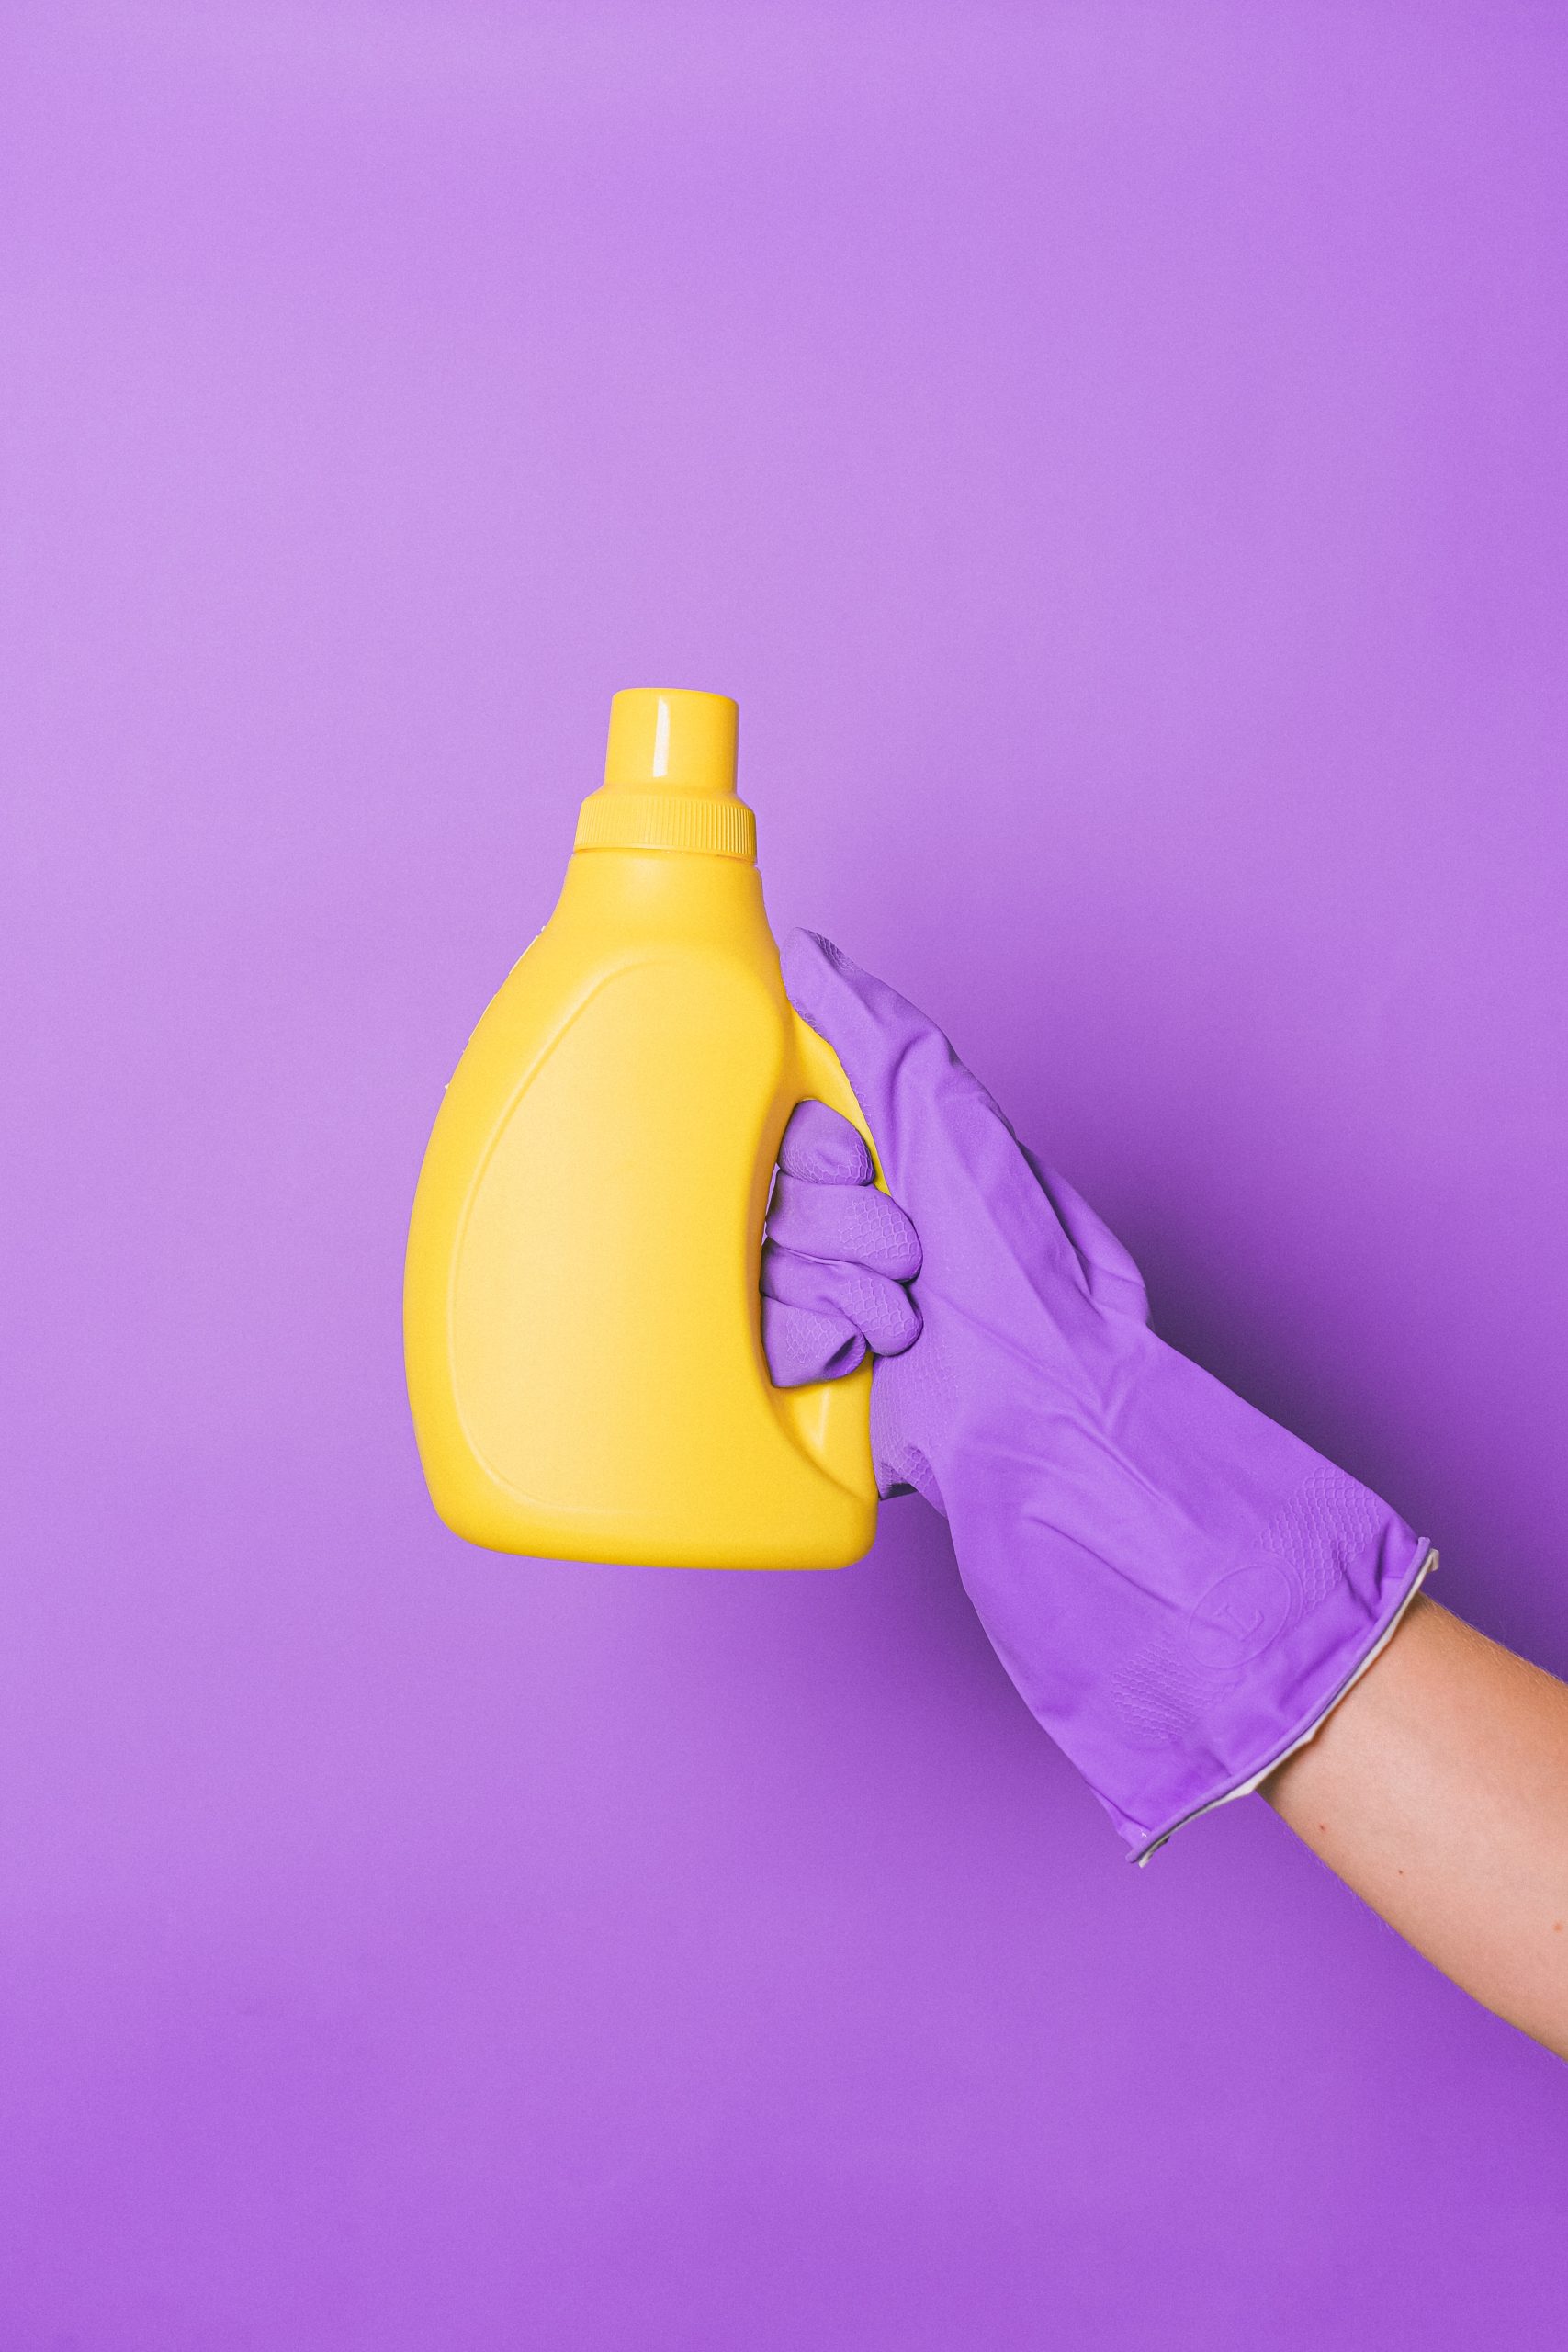 Secretos para elegir al mejor fabricante de productos de limpieza y mantener tu hogar impecable